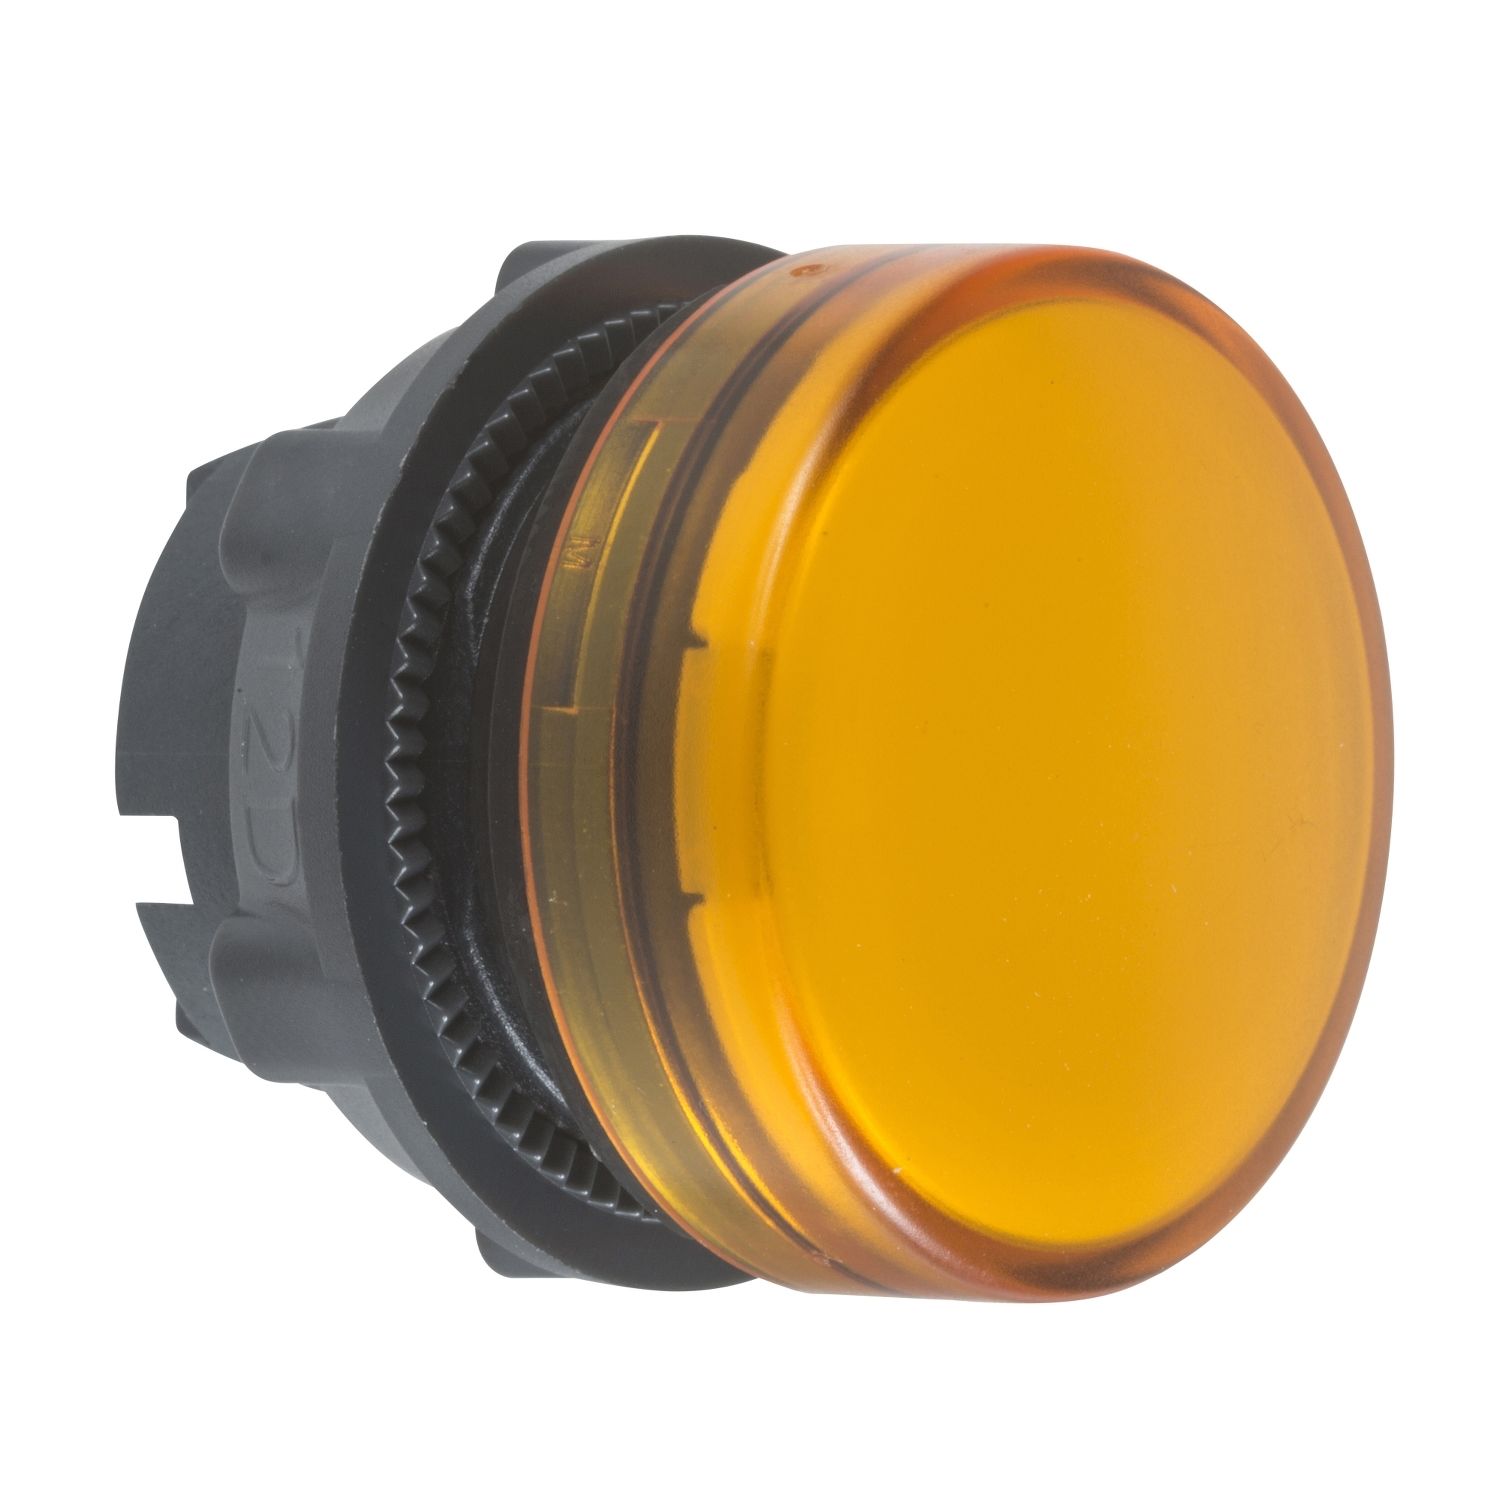 ZB5AV05 Head for pilot light, Harmony XB5, metal, orange, 22mm, plain lens for BA9s bulb